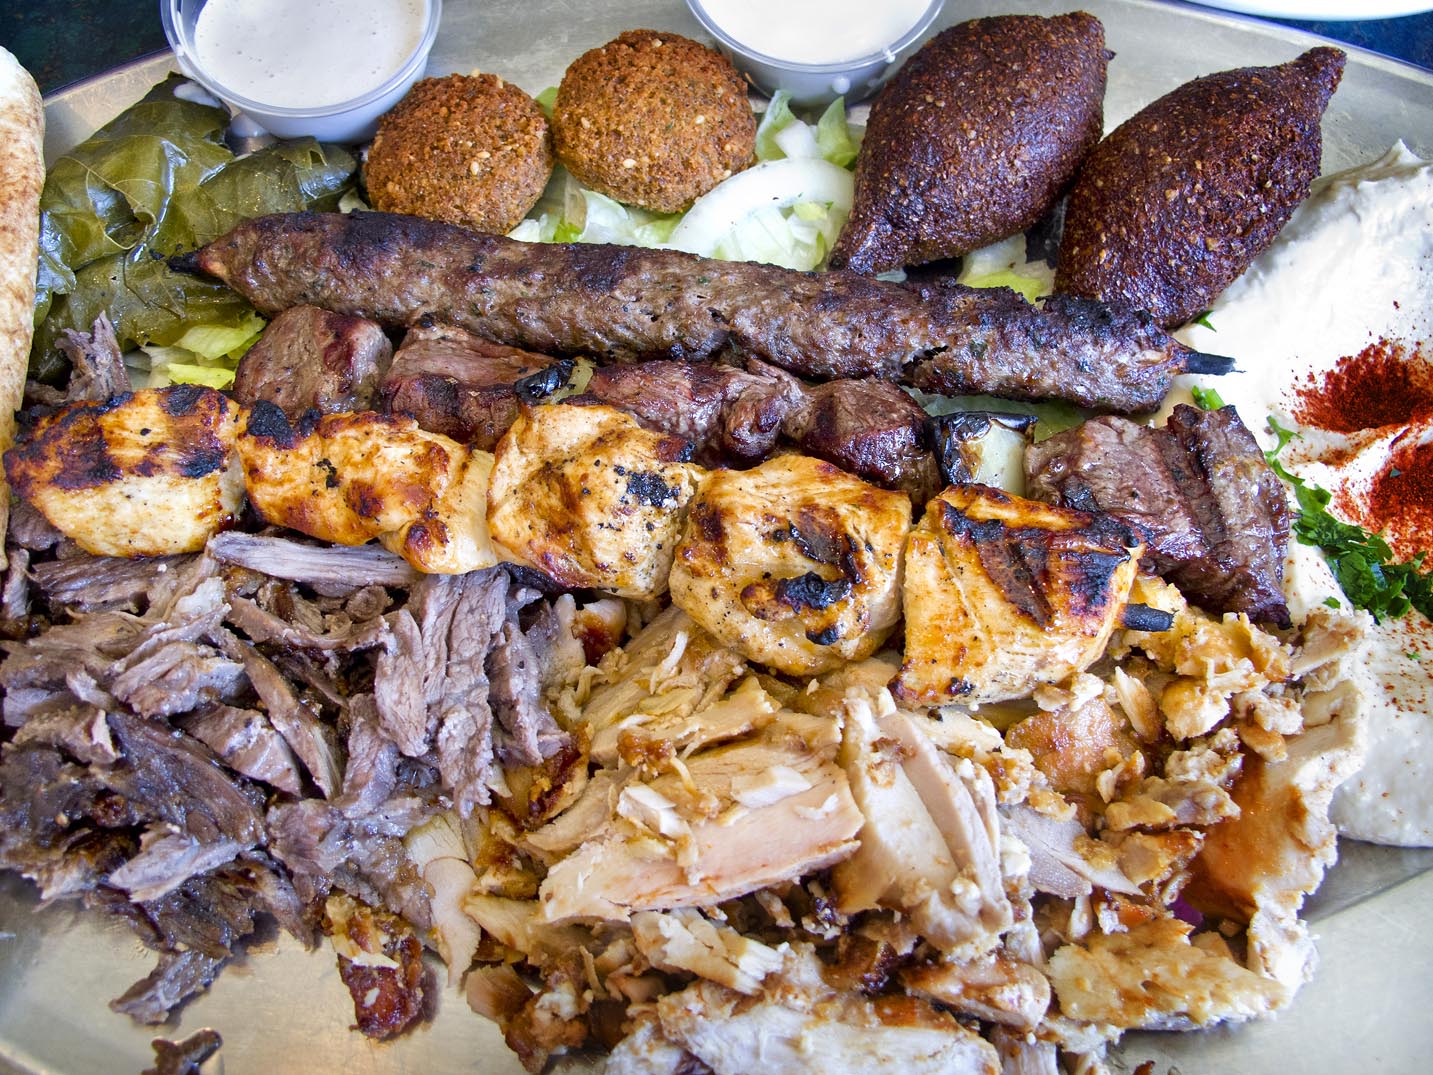 Lebanese food from Al-Ameer in Detroit.